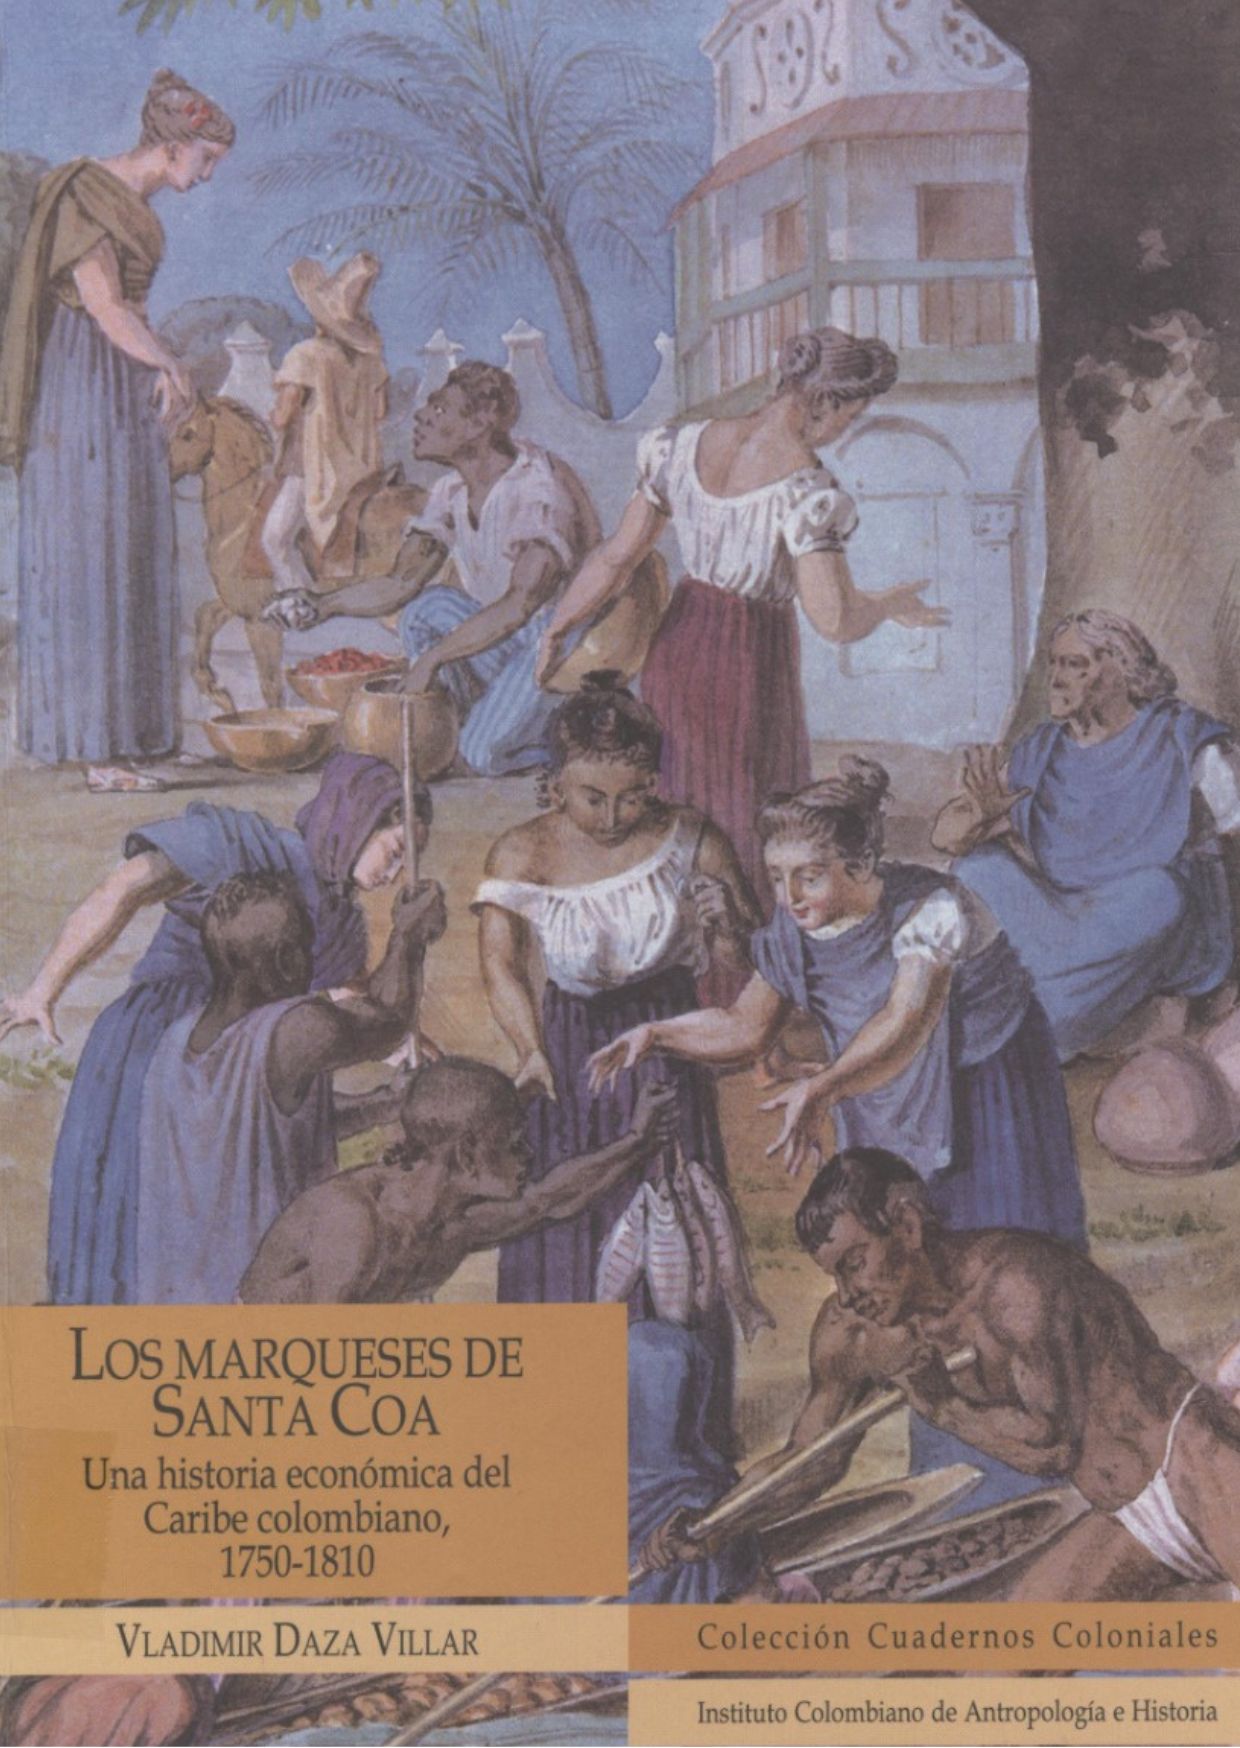 Esta es una foto de la portada del libro Marqueses de Santa Coa Una historia econonómica del Caribe colombiano 1750-1810 de Vladimir Daza Villar